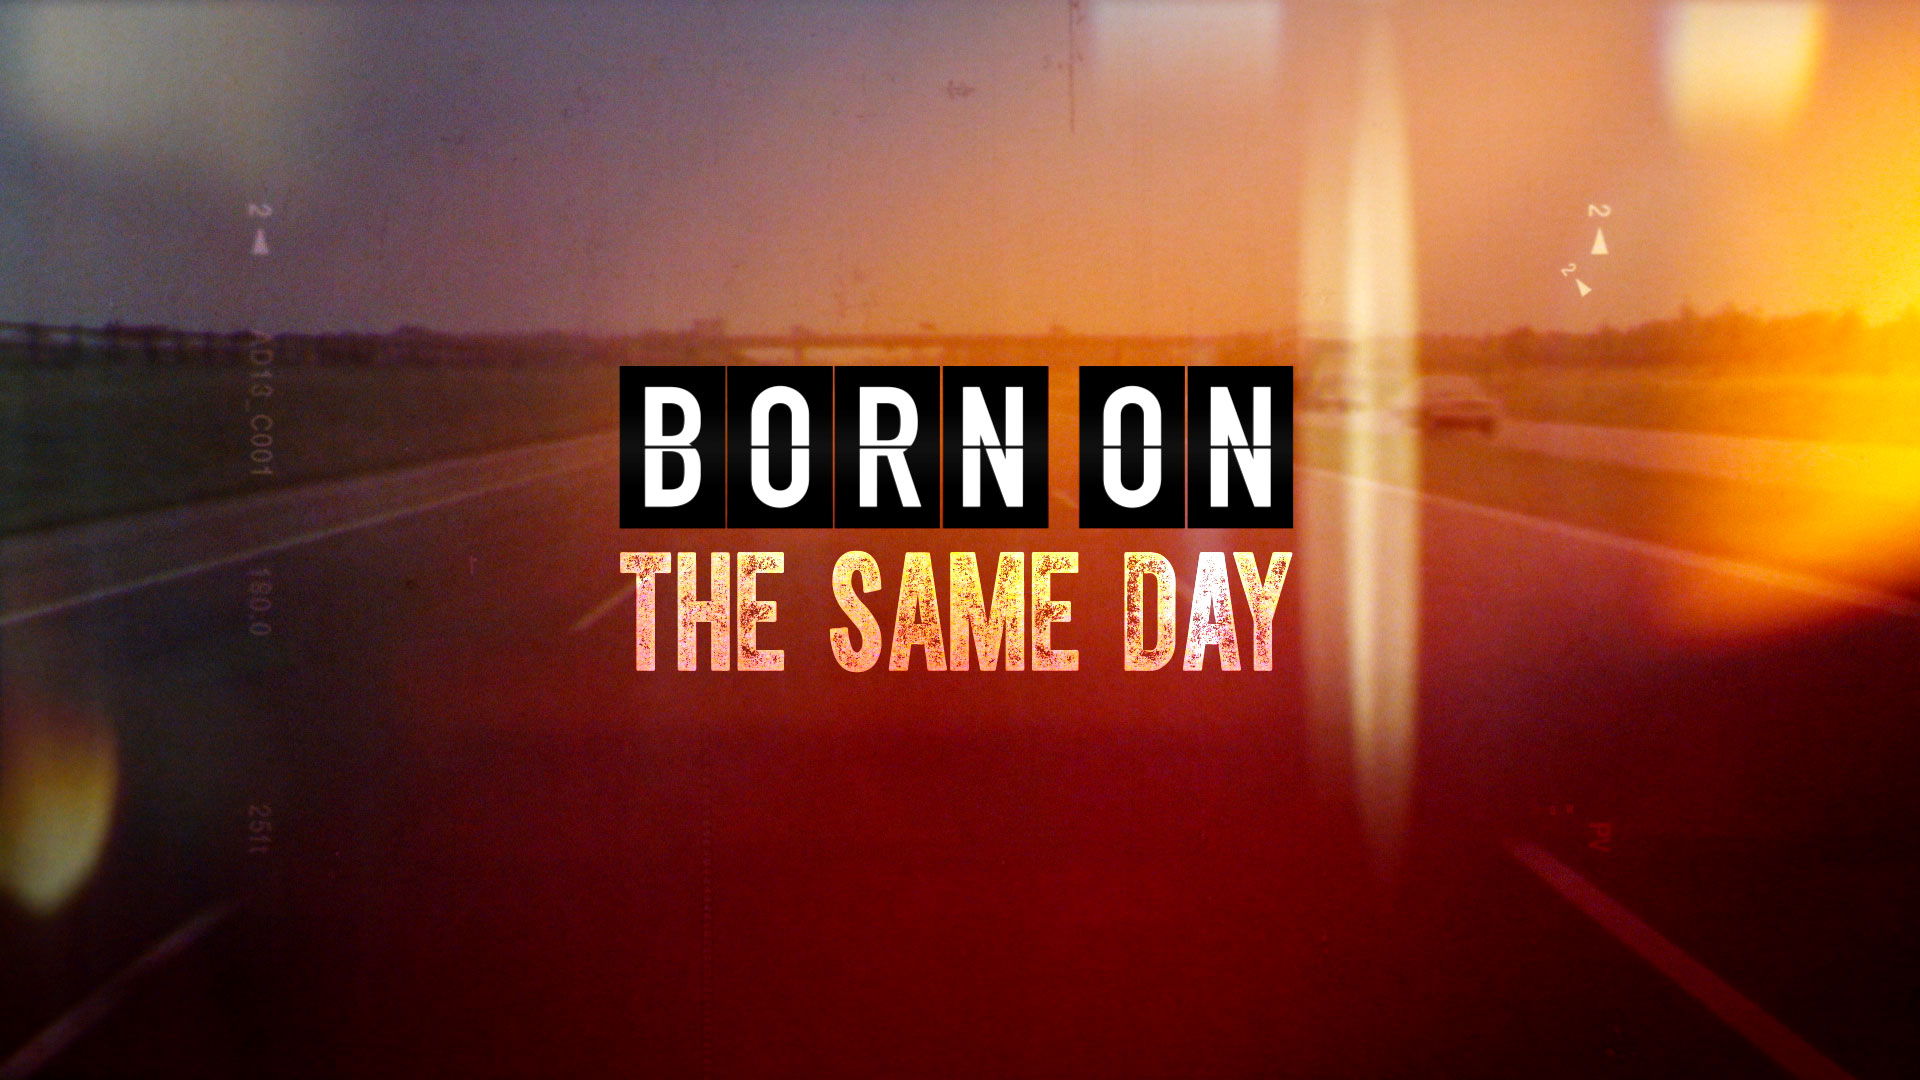 Born On the Same Day © Holey & Moley Ltd